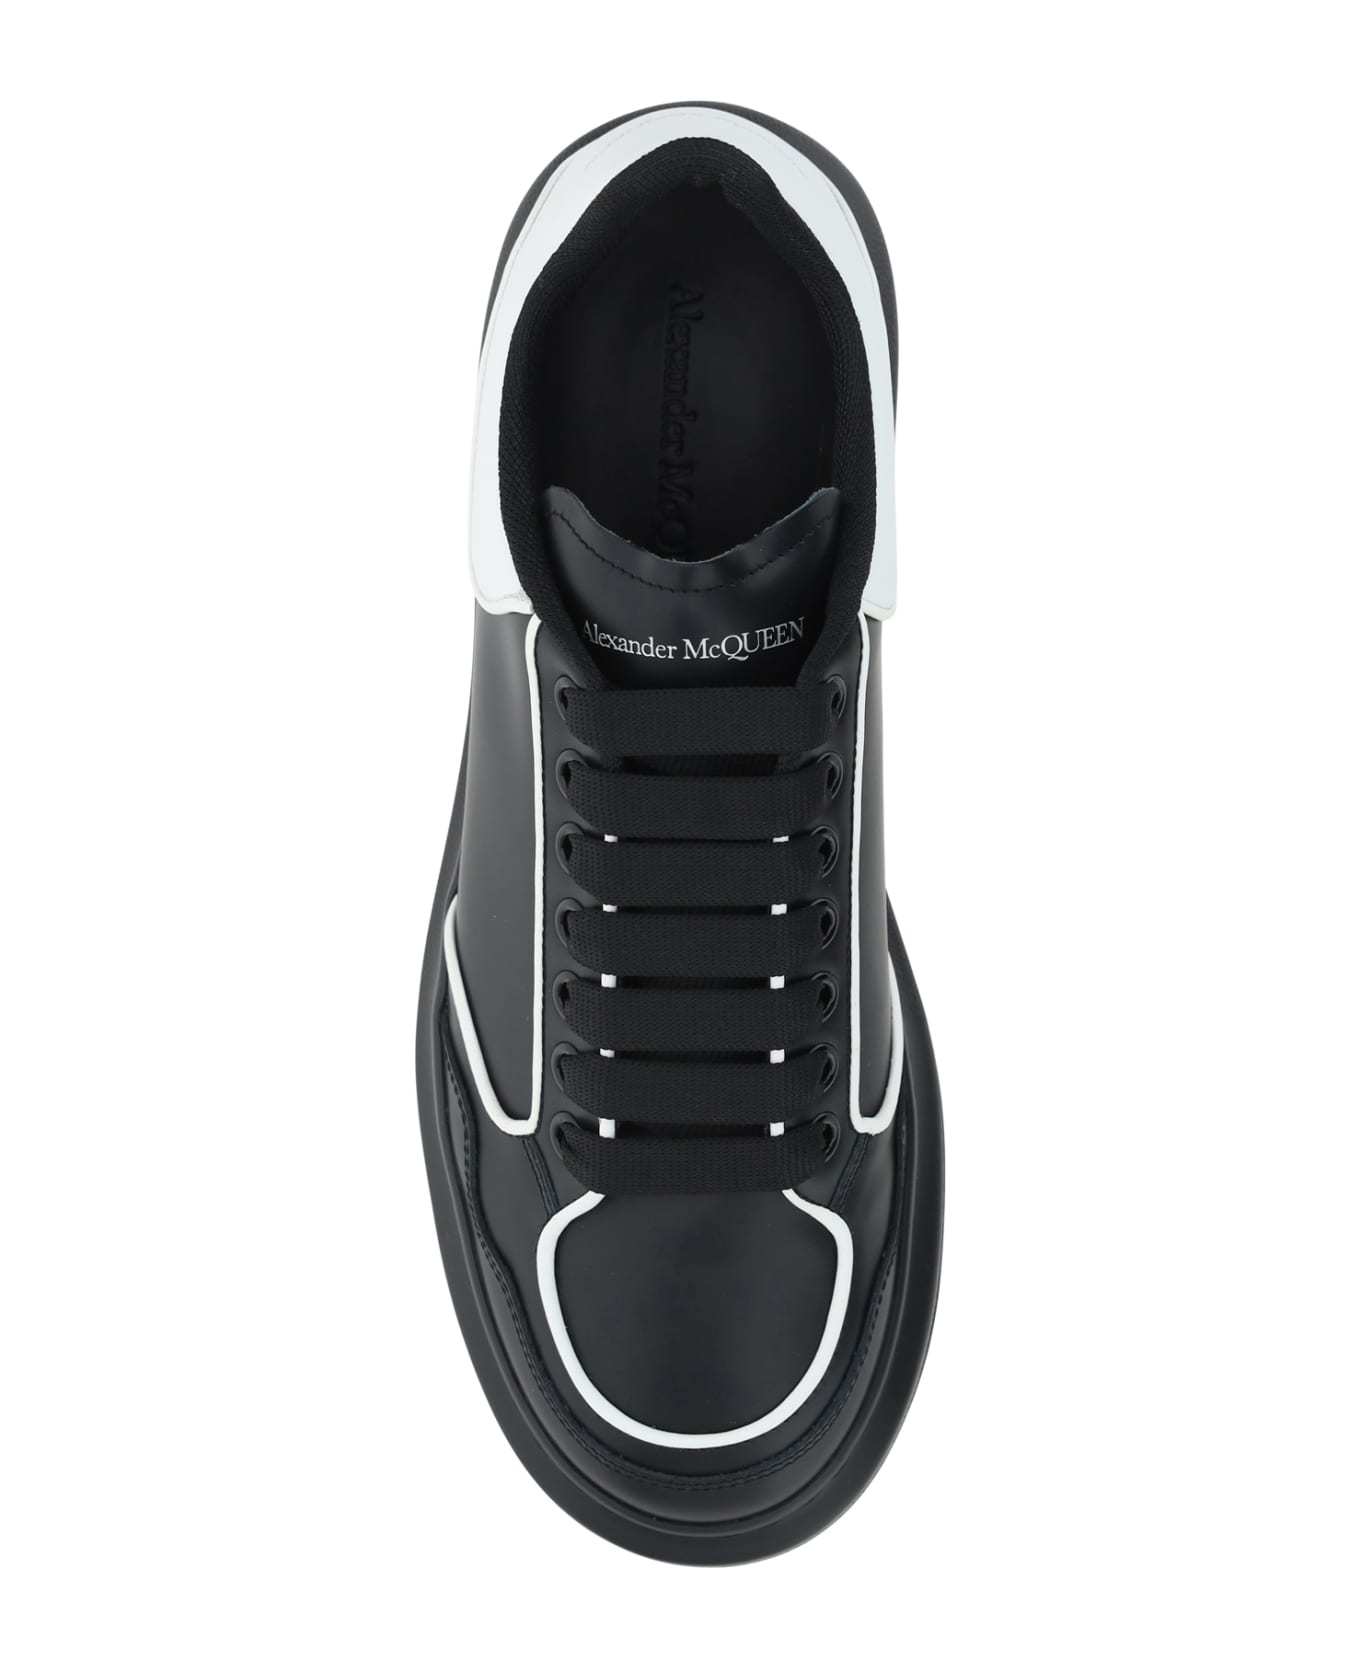 Alexander McQueen Sneakers - Black/white/white スニーカー